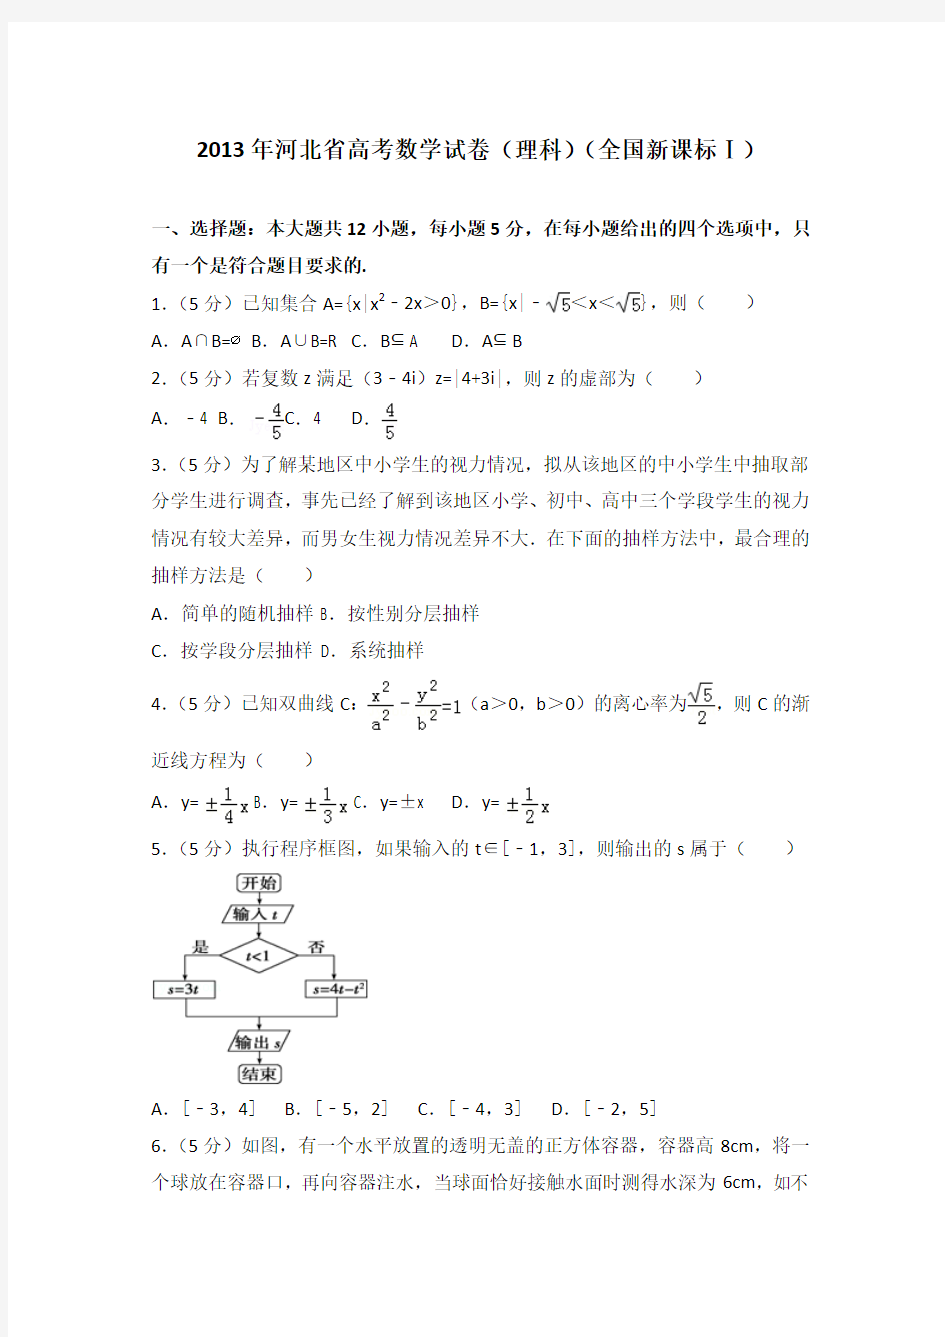 2013年全国统一高考数学试卷(理科)(新课标一)及答案